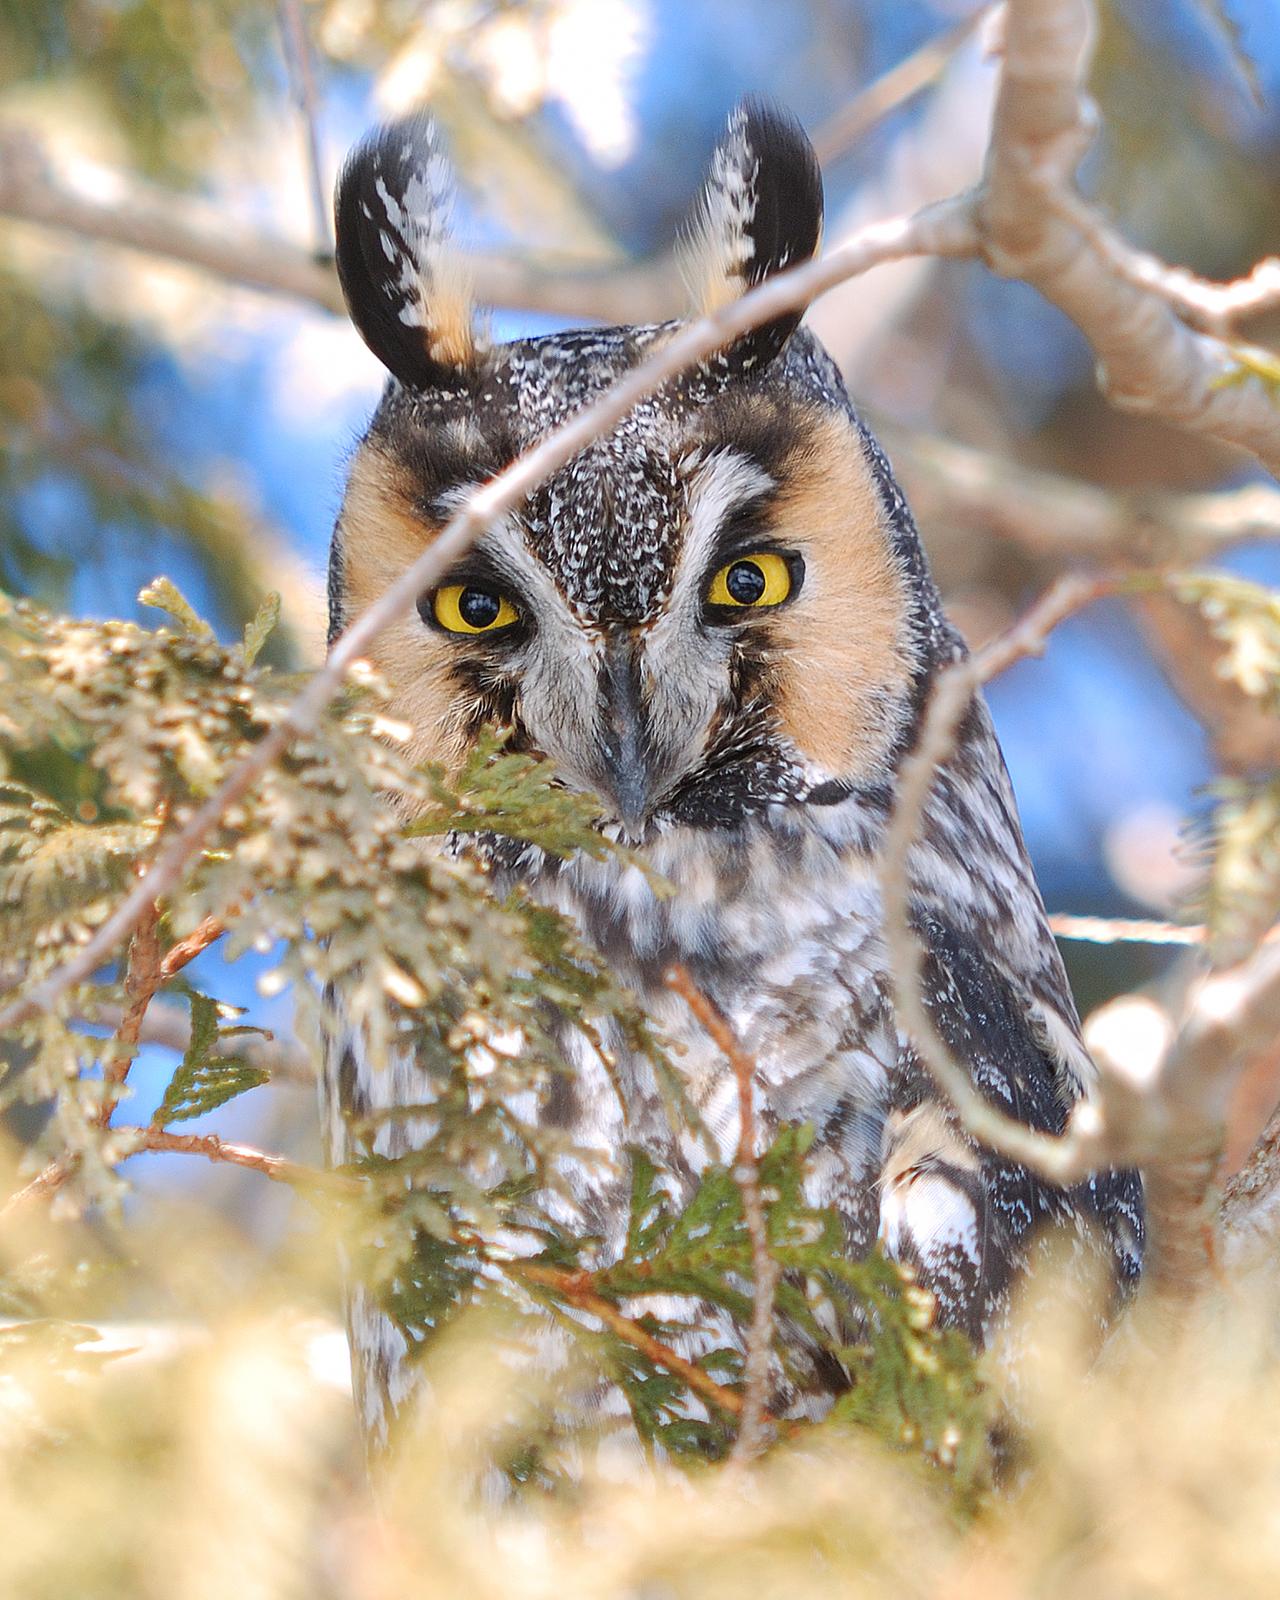 Long-eared Owl Photo by Mark Blassage